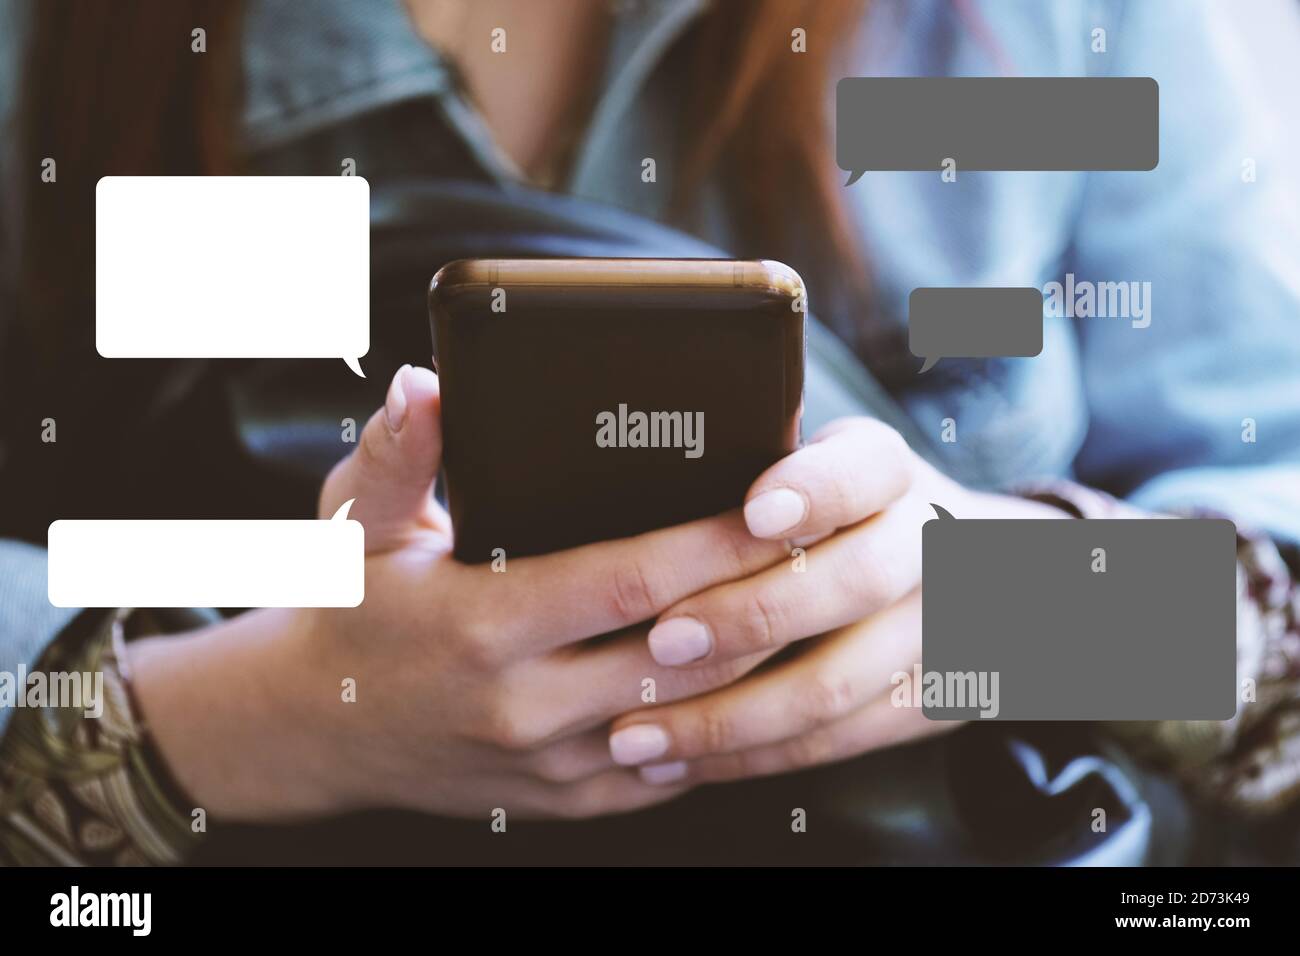 concept de messagerie texte sur smartphone avec chat ou bulles vocales - jeune femme méconnue utilisant un téléphone mobile pour la messagerie instantanée Banque D'Images